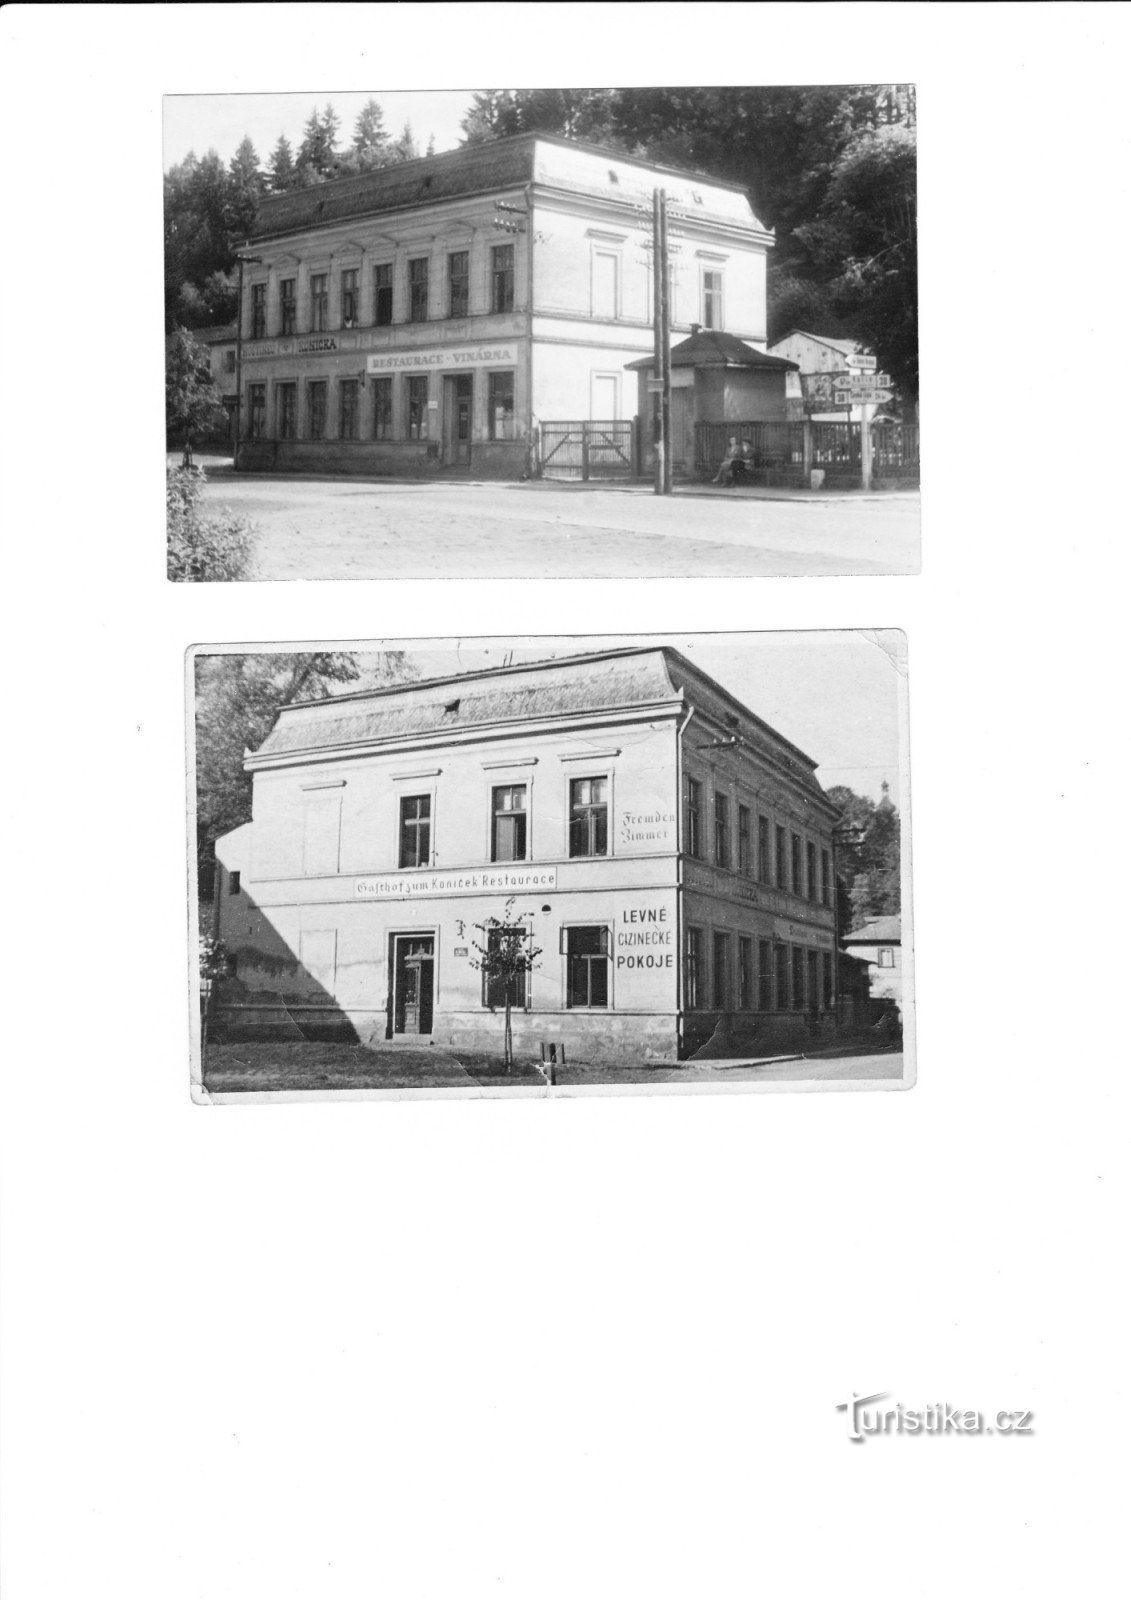 alkuperäinen hotelli Koníček - herra Šeneklin isoisän omaisuutta